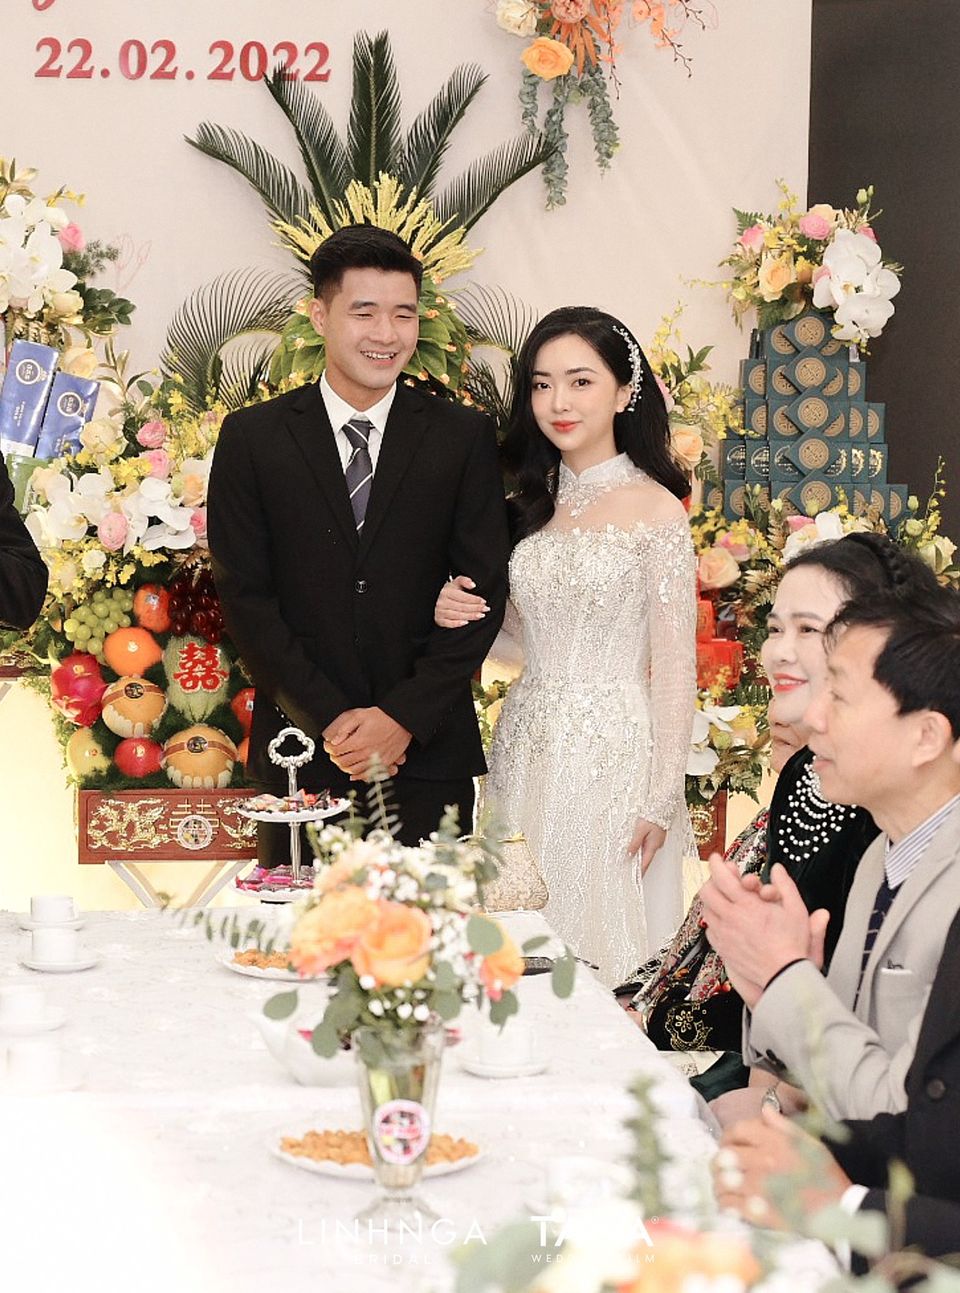 Ảnh tự dìm - hình ngày cưới của Hà Đức Chinh và vợ: Lầy lội quen rồi